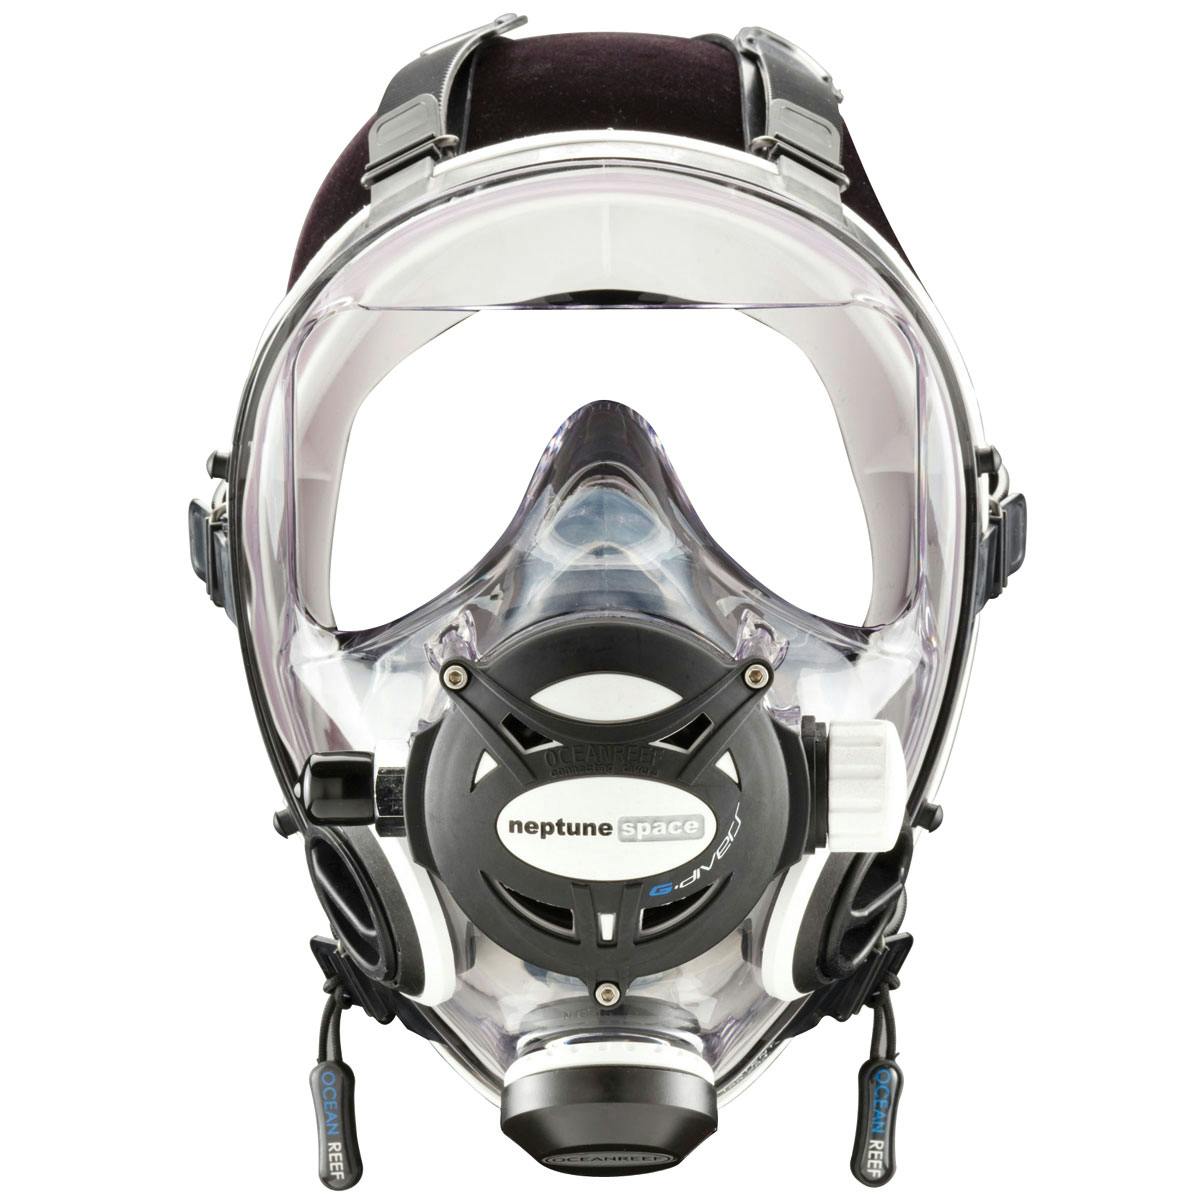 Ocean Reef Neptune Space G Full Face Mask - White